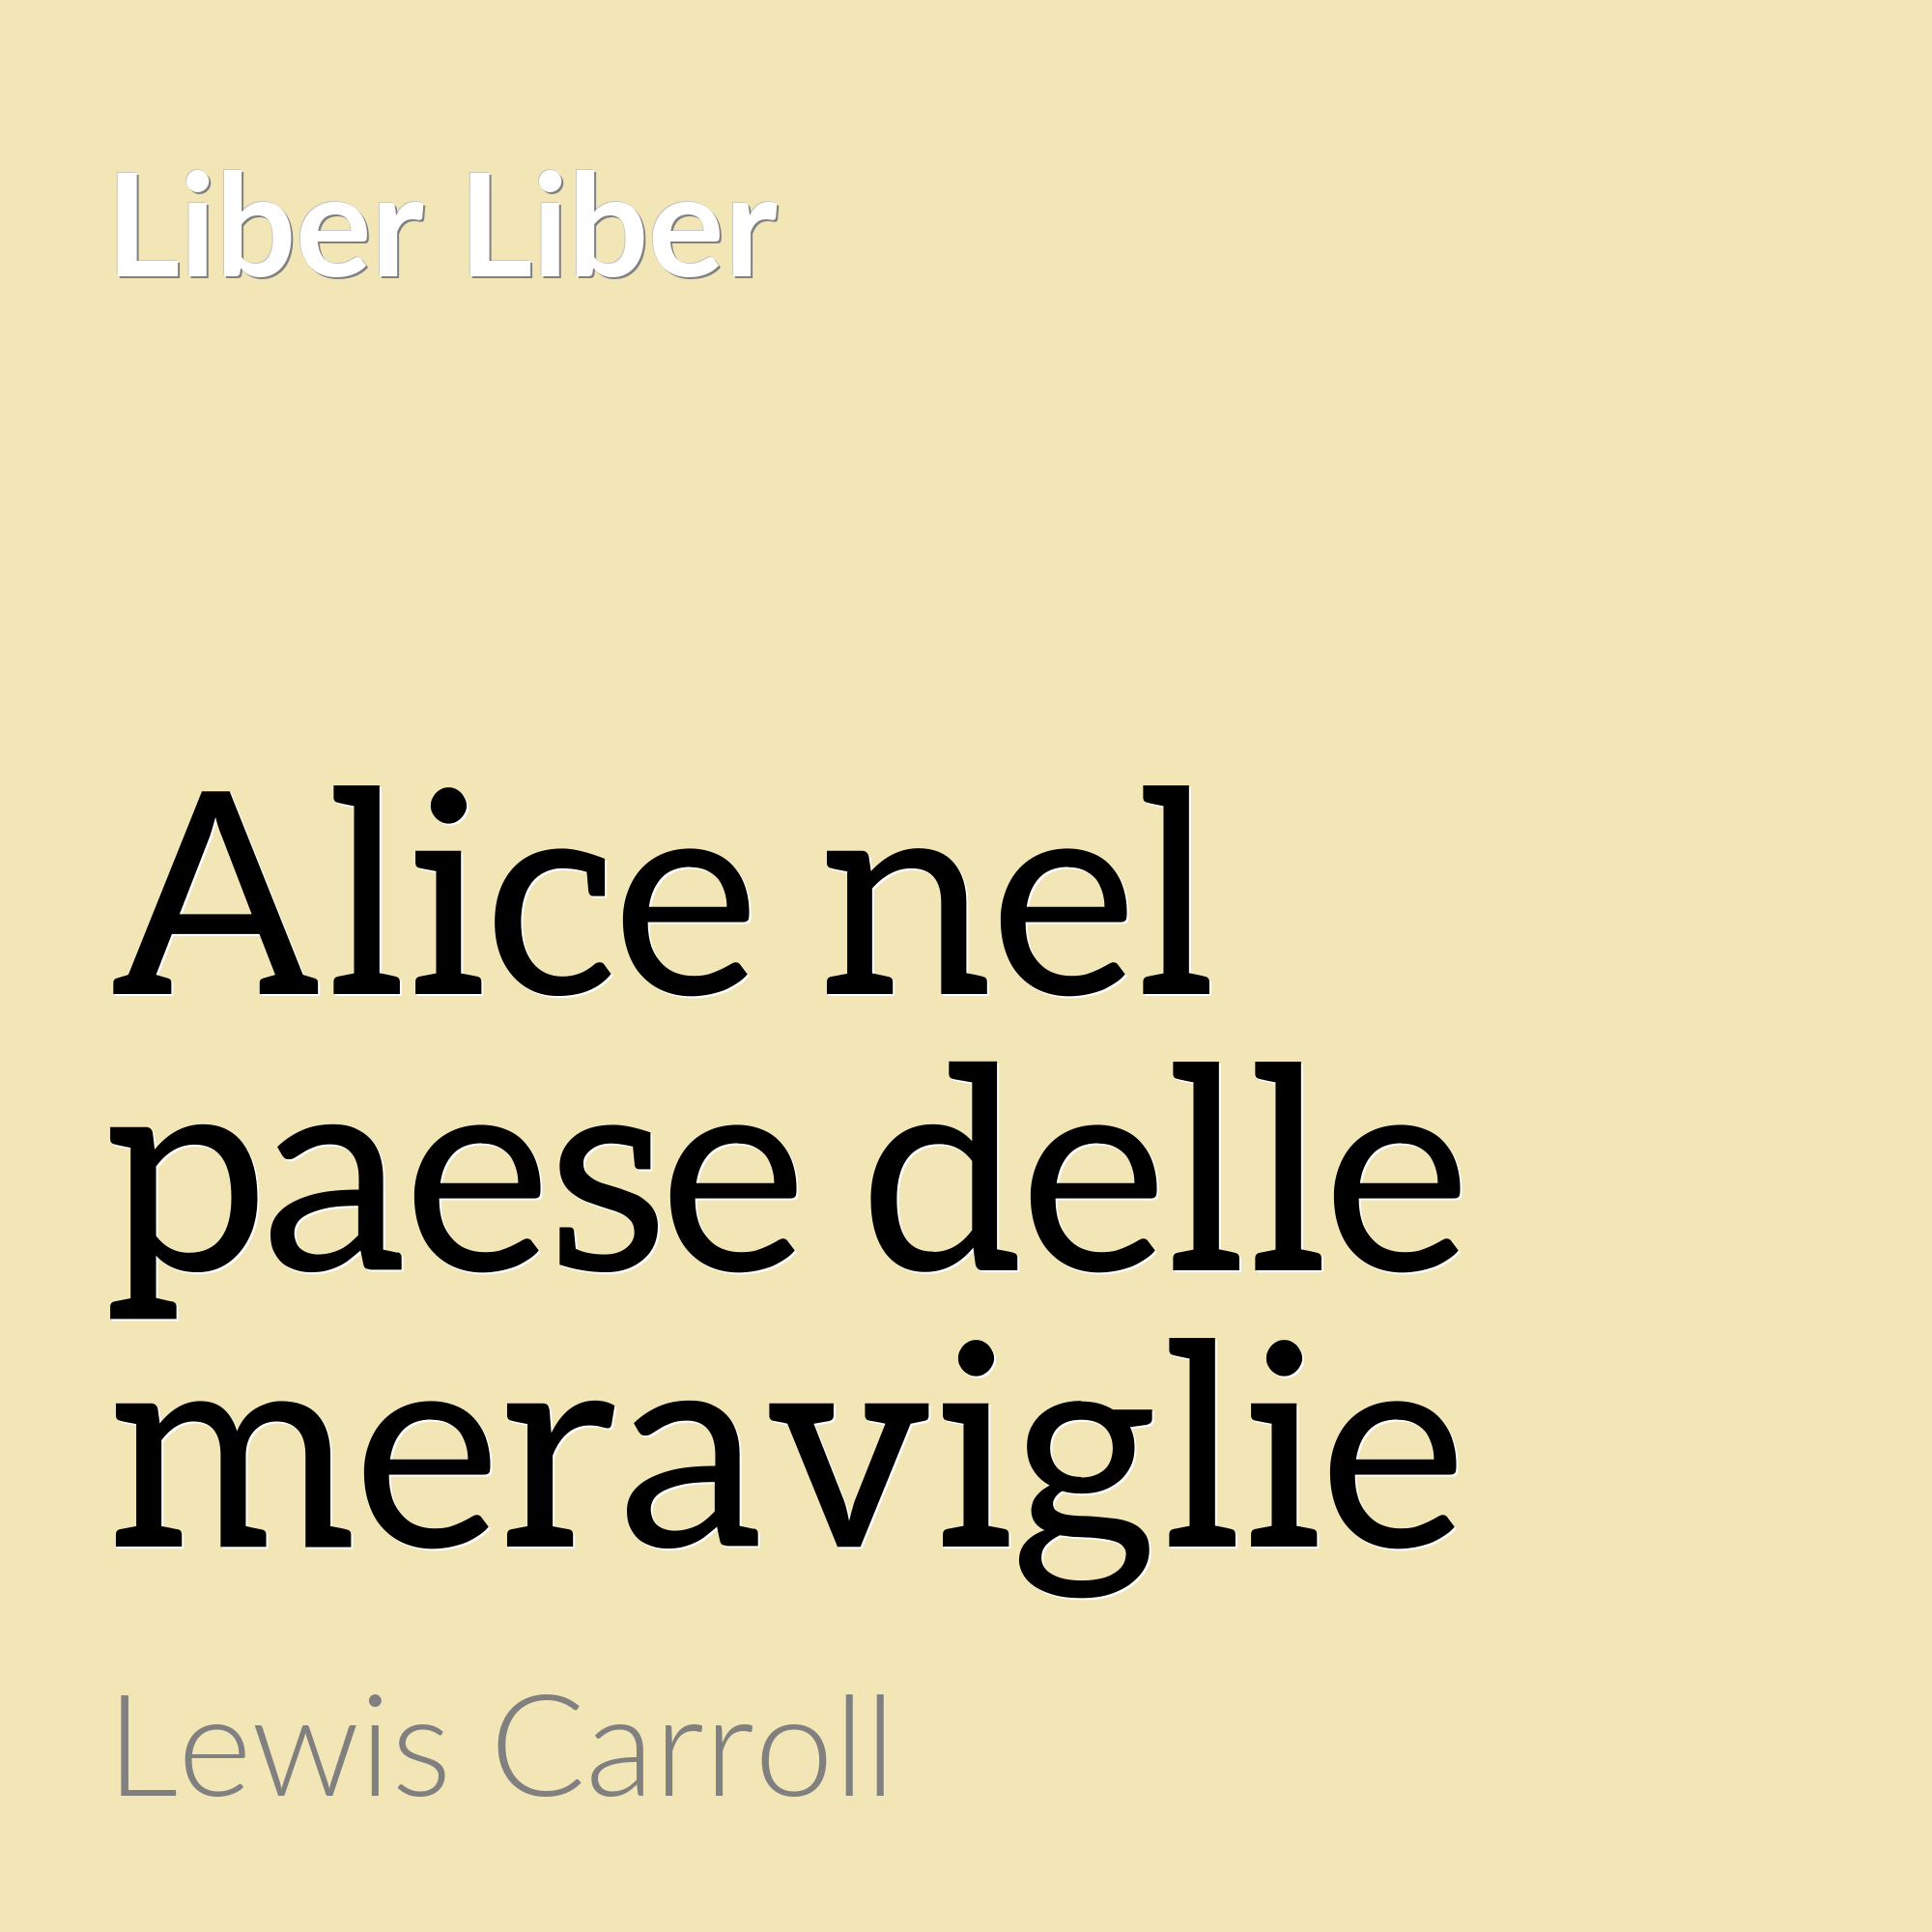 Alice nel paese delle meraviglie:Lewis Carroll